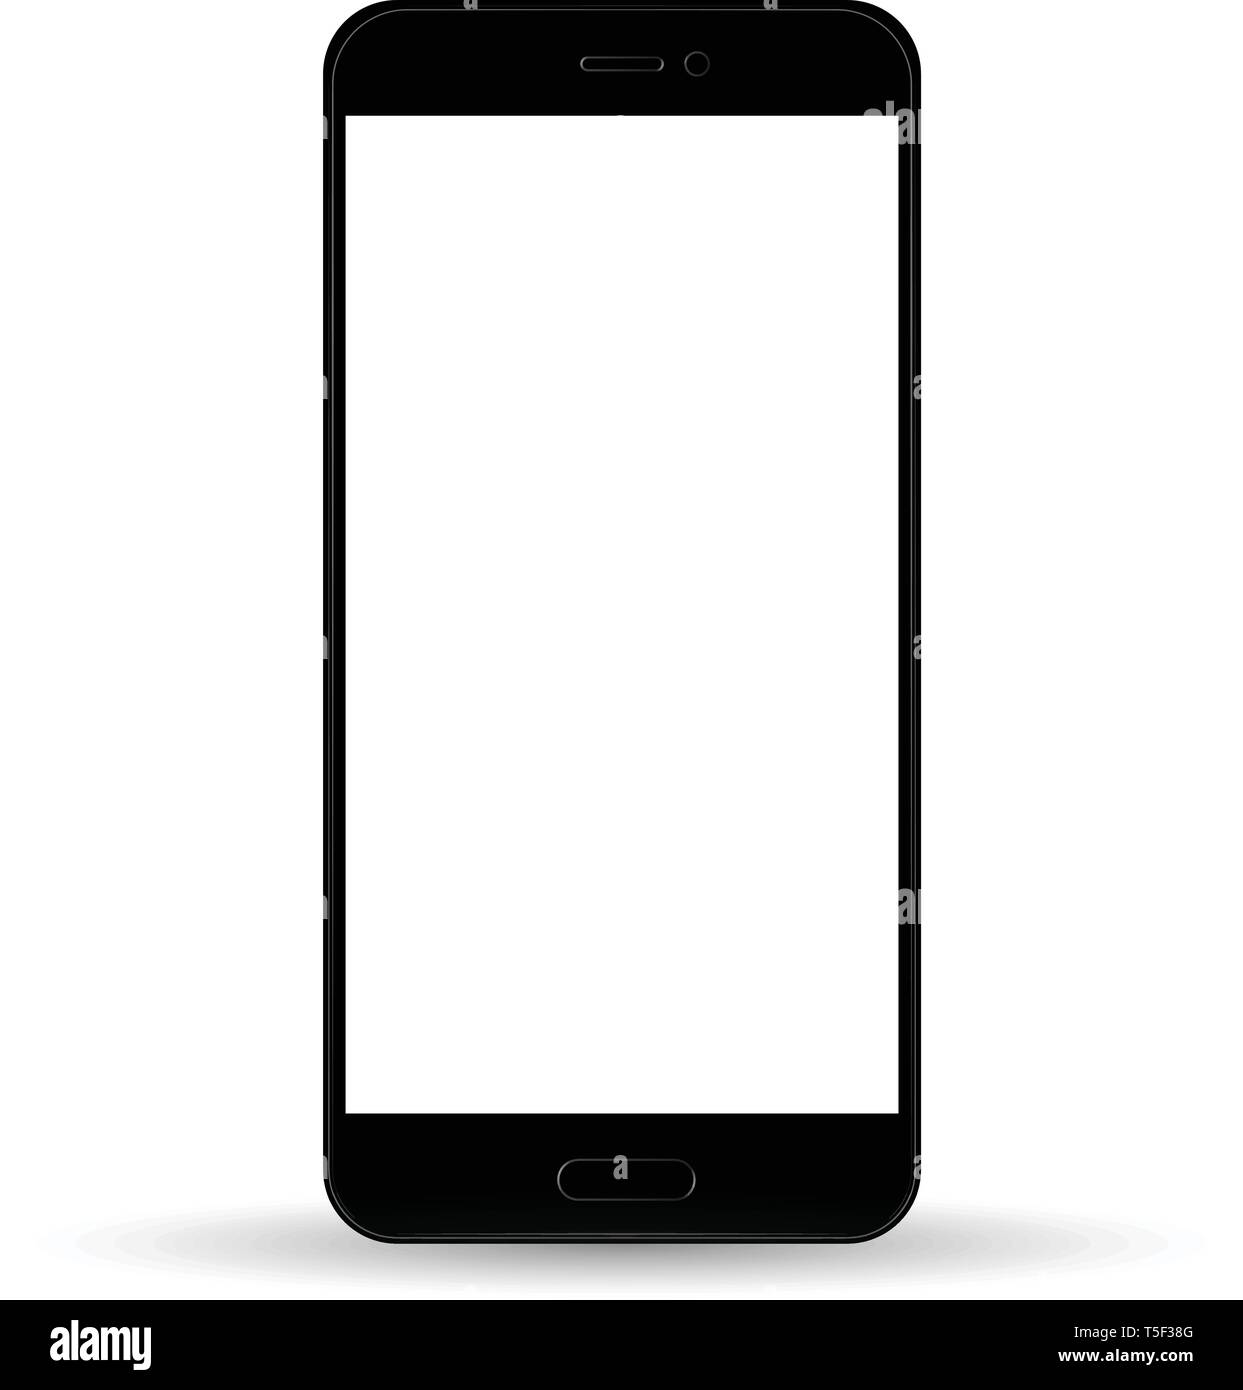 Một chiếc smartphone kiểu iPhone màu đen với màn hình cảm ứng trống sẽ là sự lựa chọn tuyệt vời cho những ai yêu thích thiết kế đầy mạnh mẽ và đậm tính cá nhân. Hãy cùng tìm hiểu và khám phá hình ảnh của sản phẩm này để đón nhận những trải nghiệm đầy thú vị.